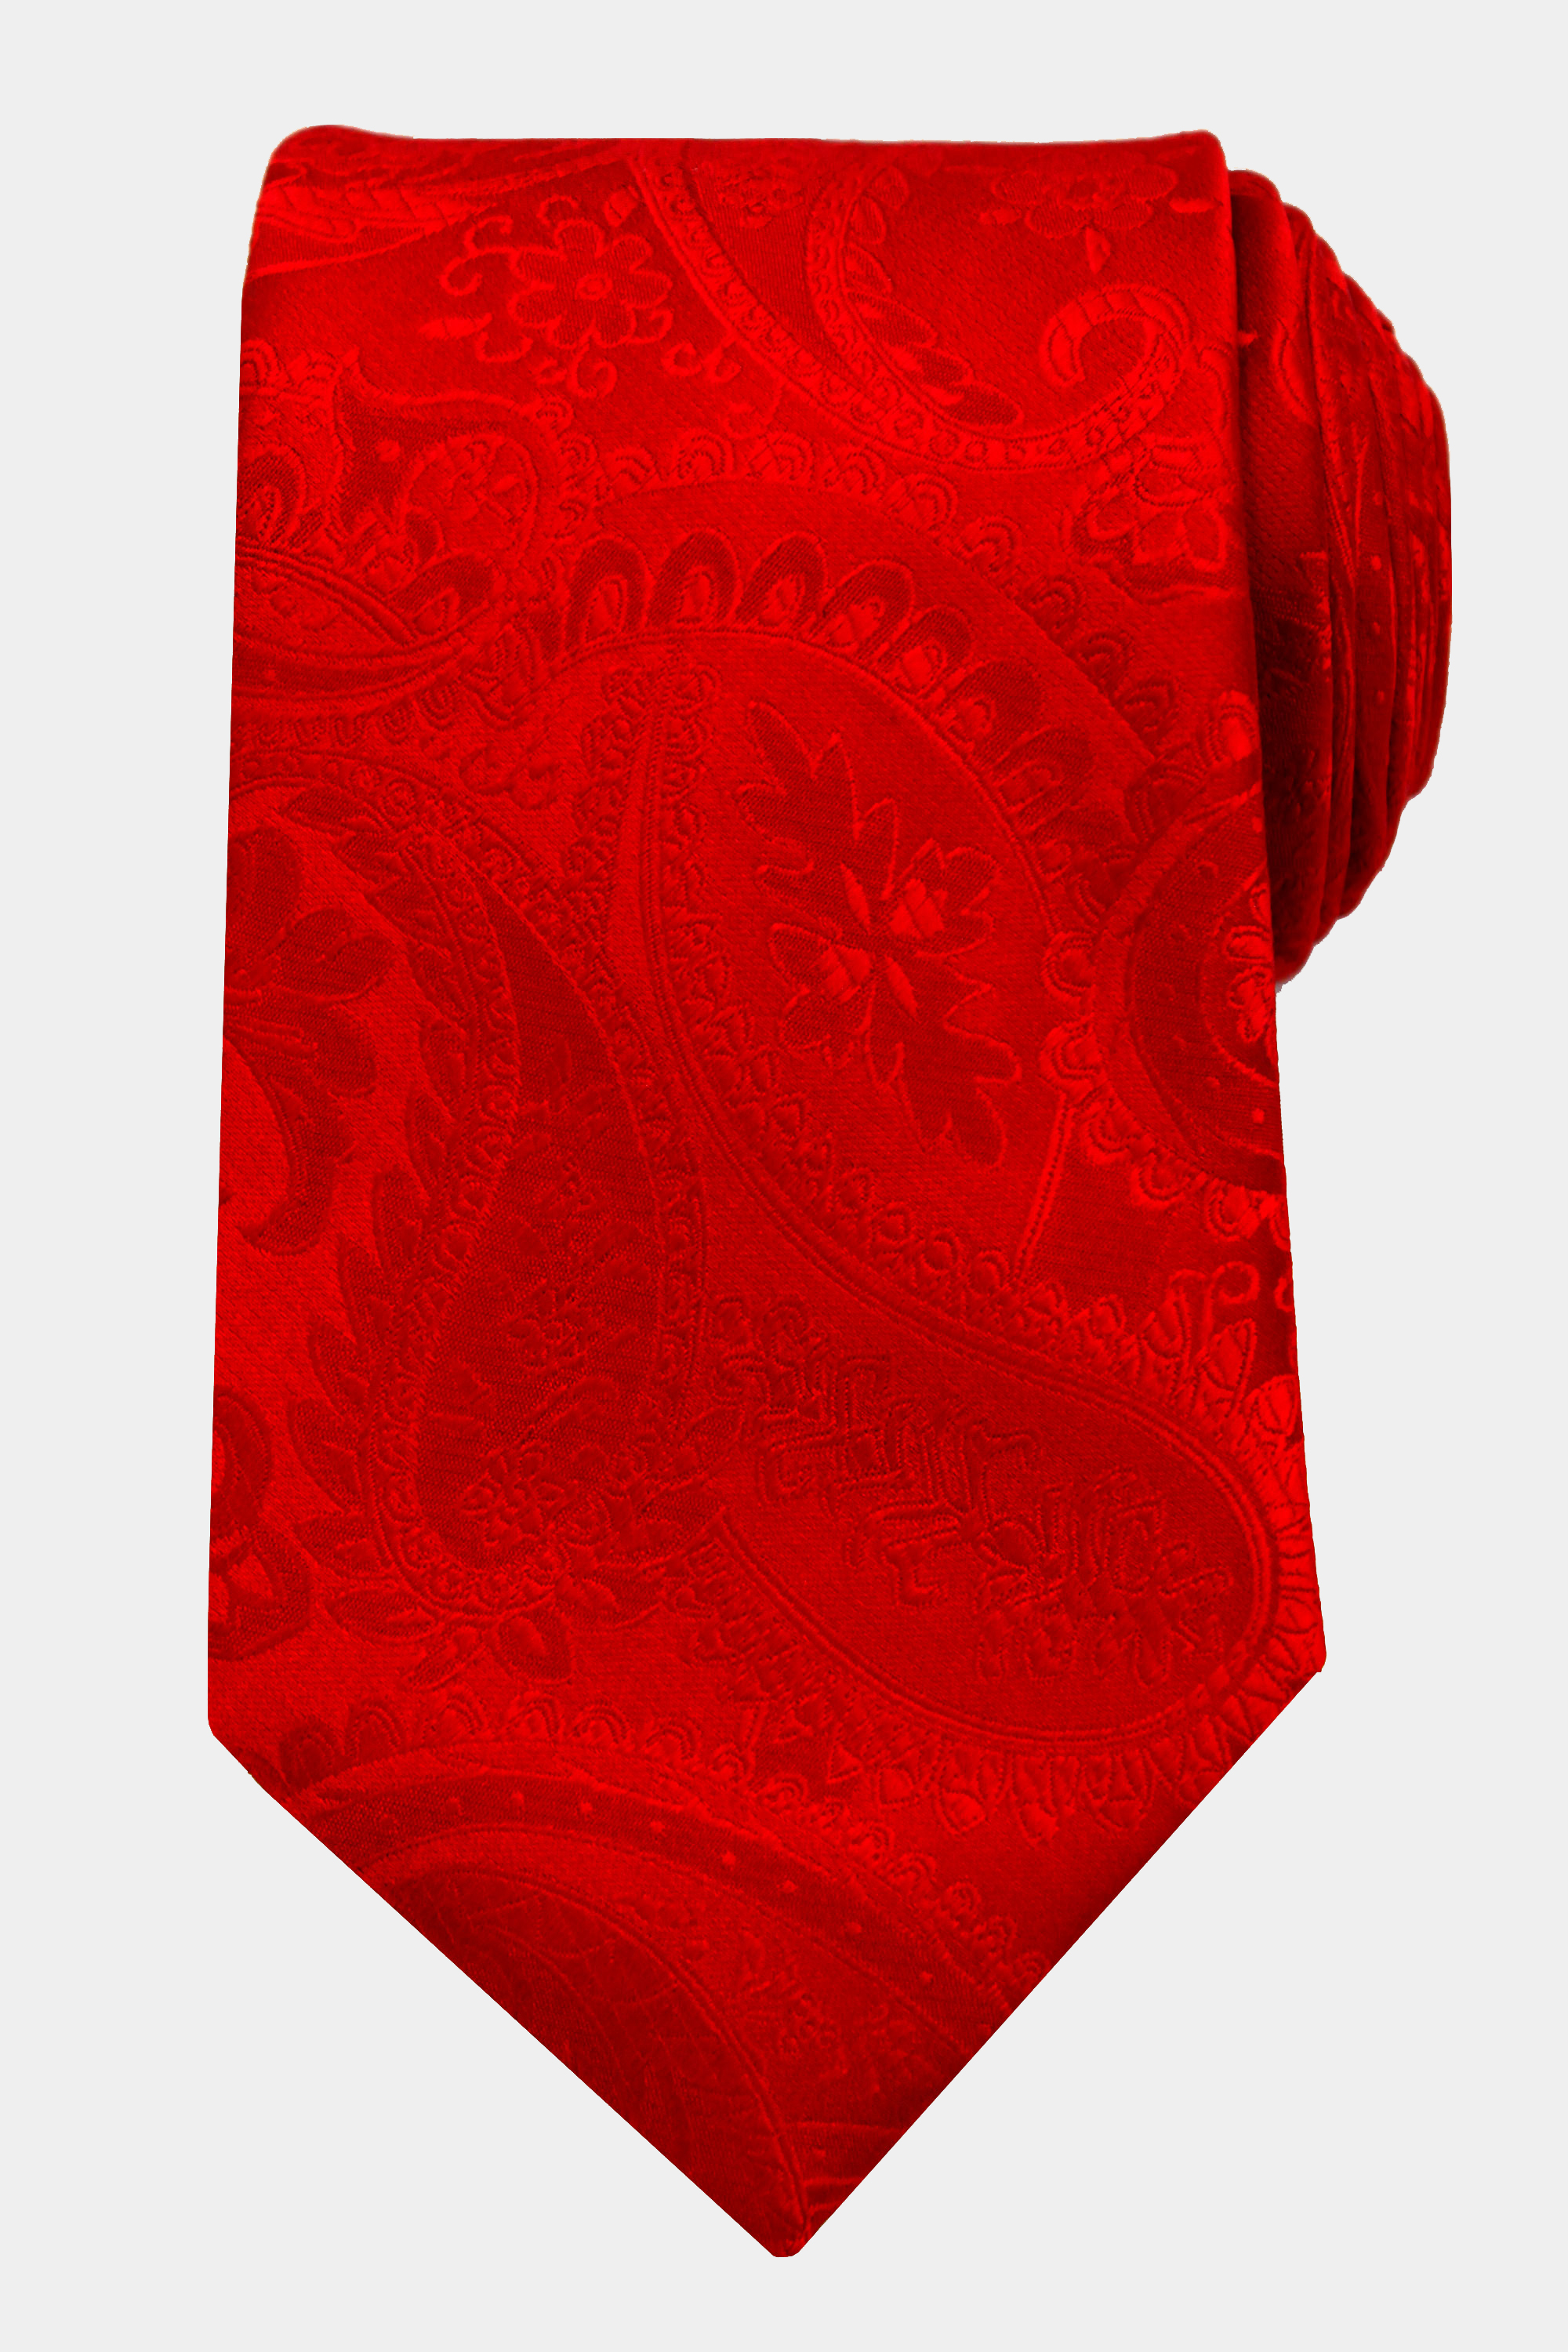 Red-Paisley-Tie-from-Gentlemansguru.com_